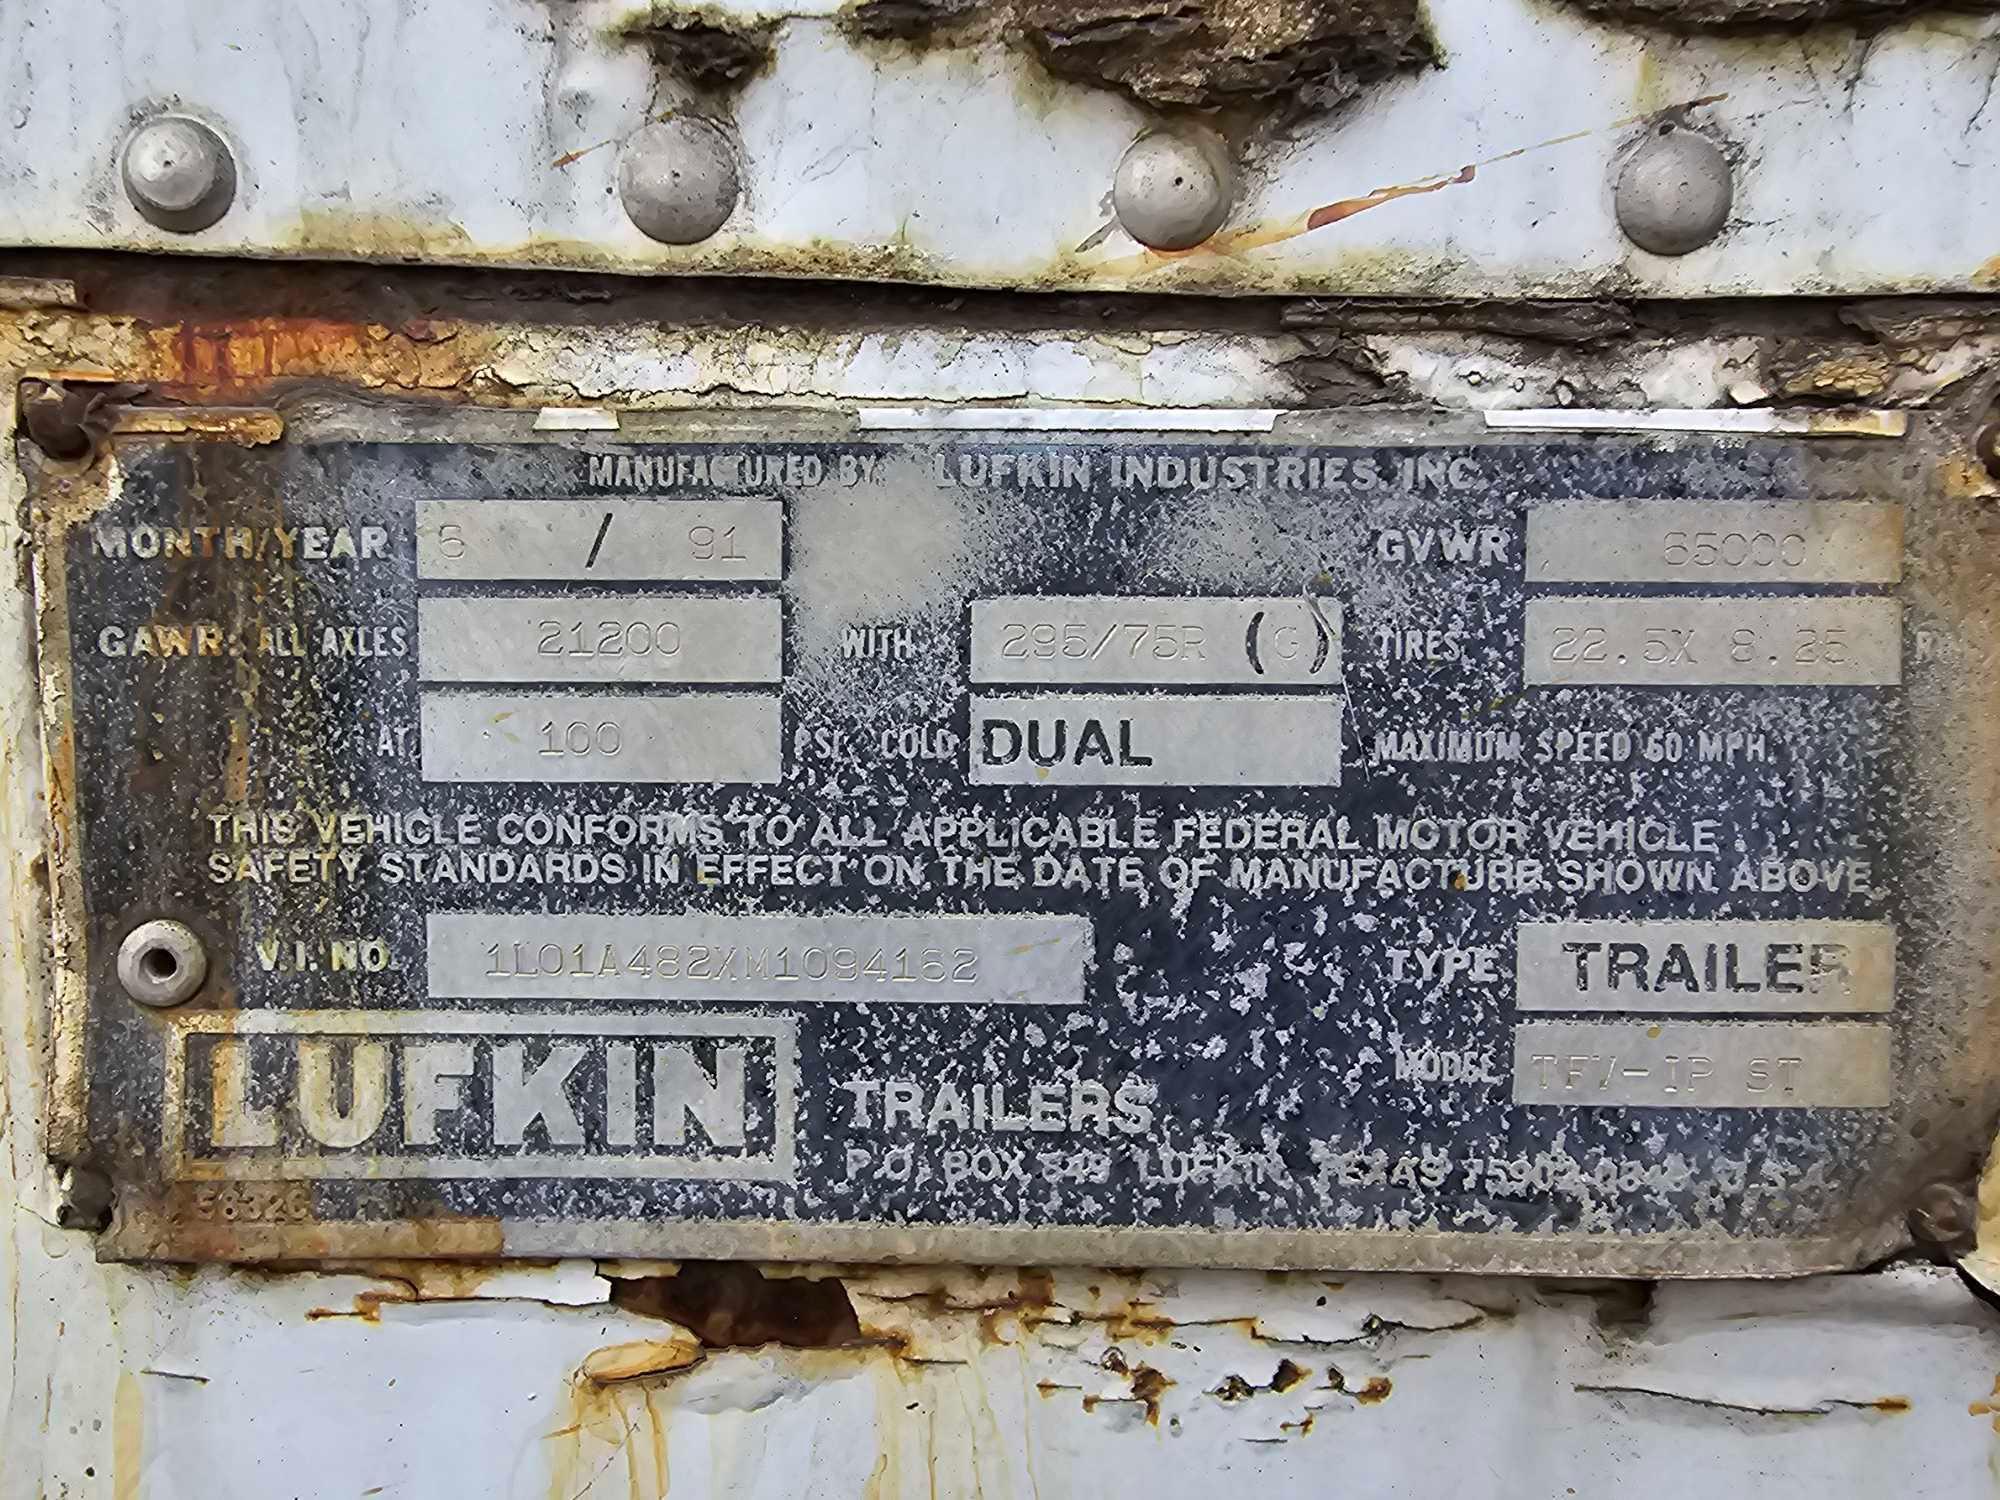 1991 Lufkin 48 Foot Dry Van Trailer